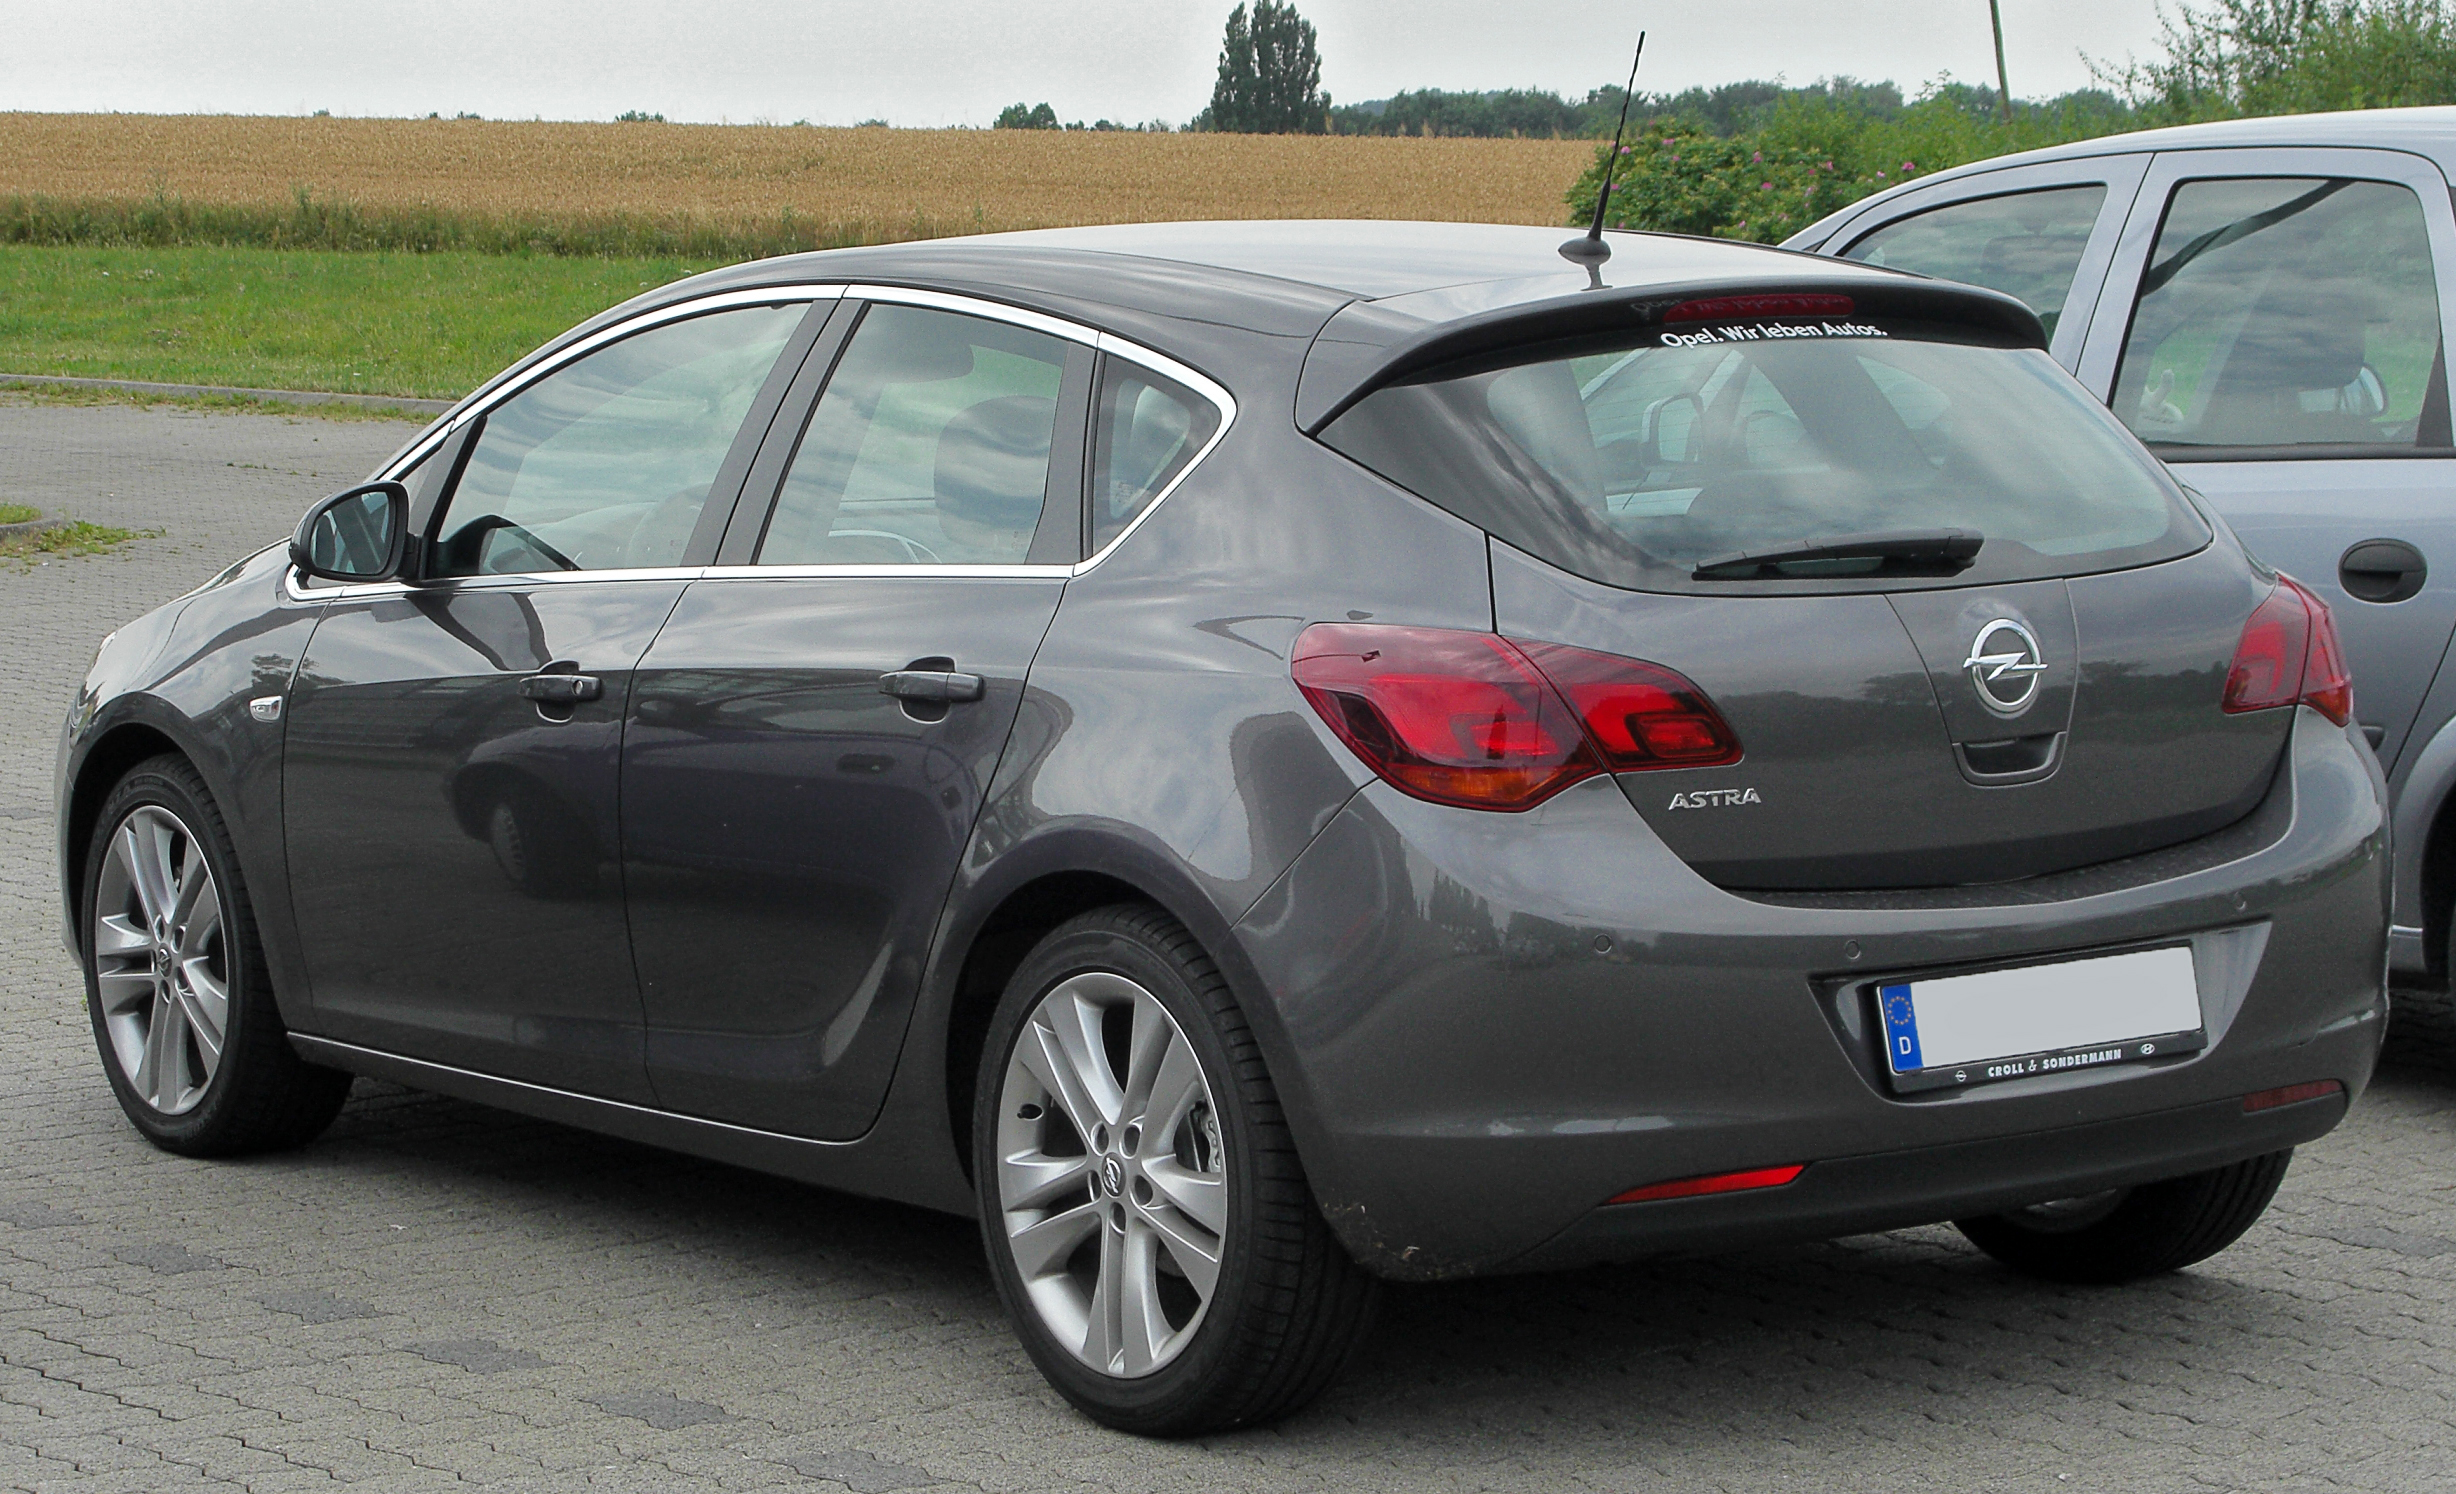 Charles Keasing as vandaag File:Opel Astra J rear-1 20100725.jpg - Wikipedia